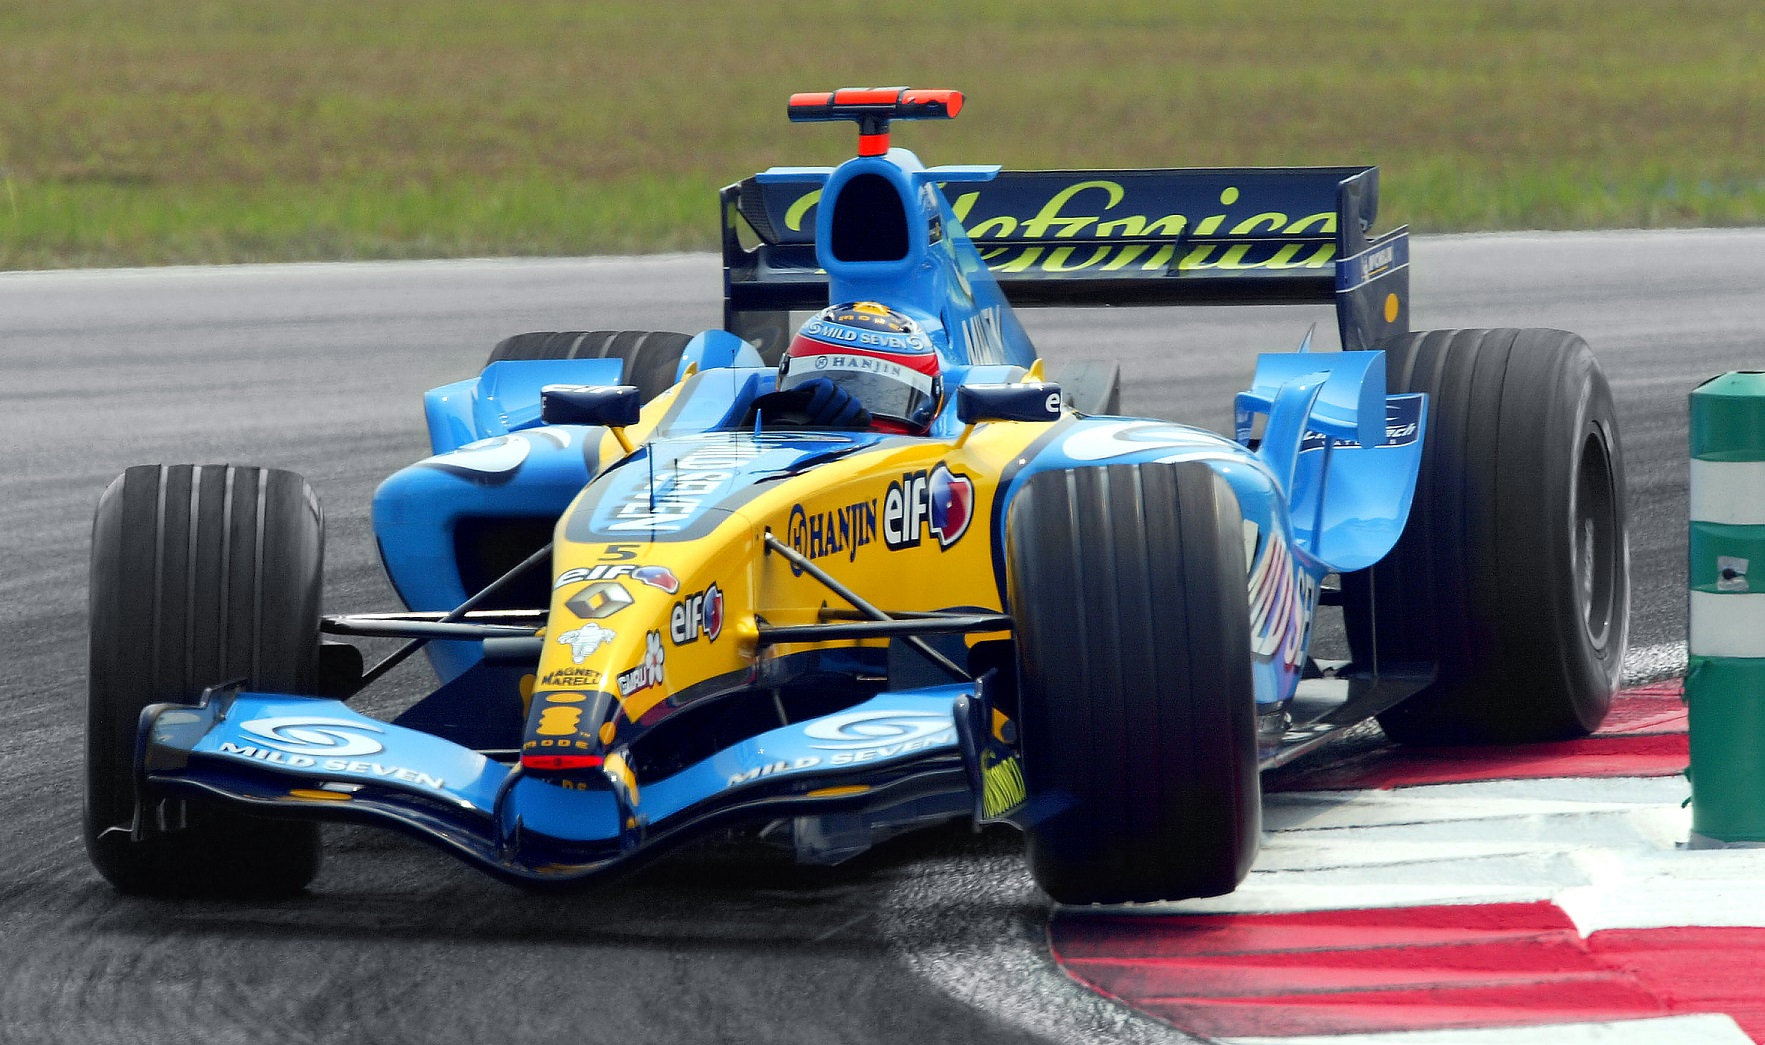 Caro de Fórmula 1 da Renault pilotado por Fernando Alonso F1 faz uma curva com as rodas da esquerda sobre a zebra